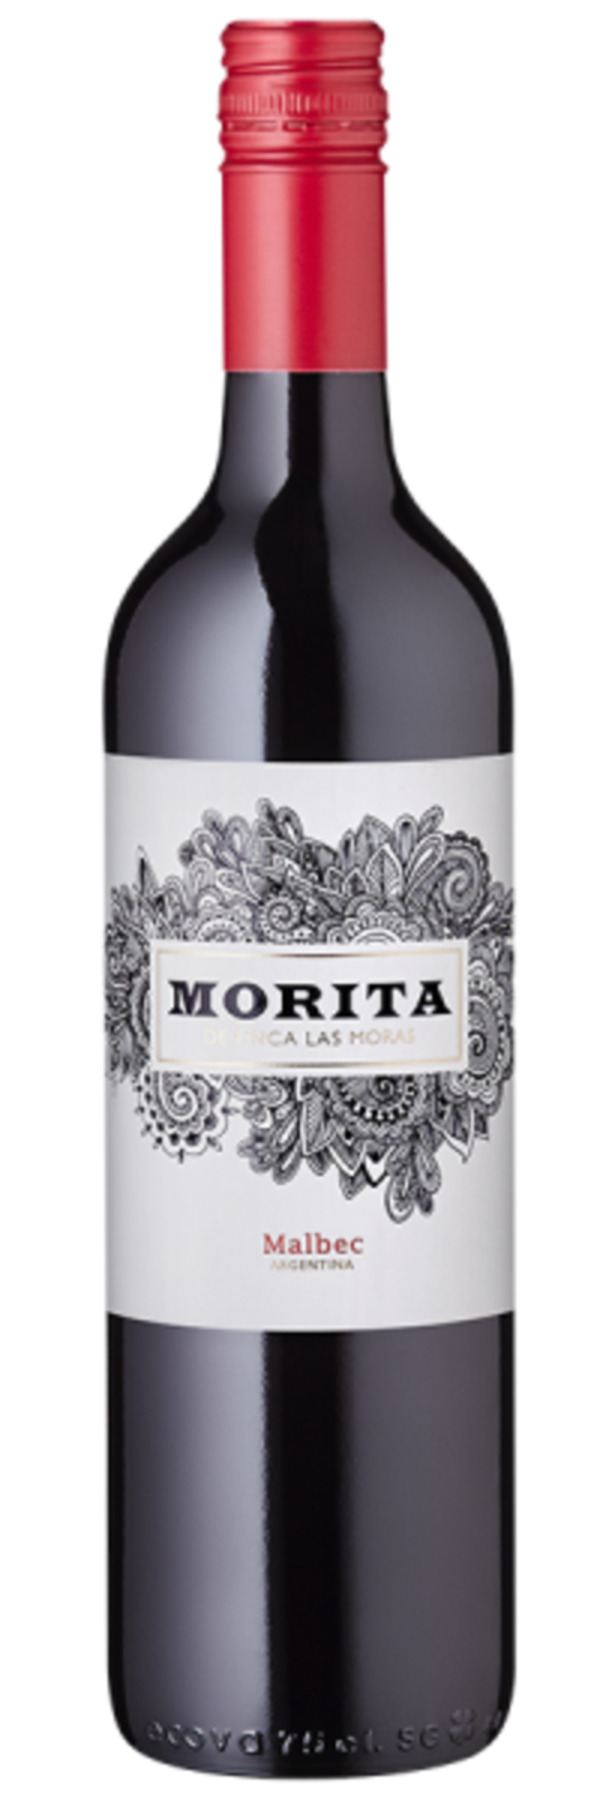 Bild 1 von Morita Malbec - 2021 - Finca Las Moras - Argentinischer Rotwein